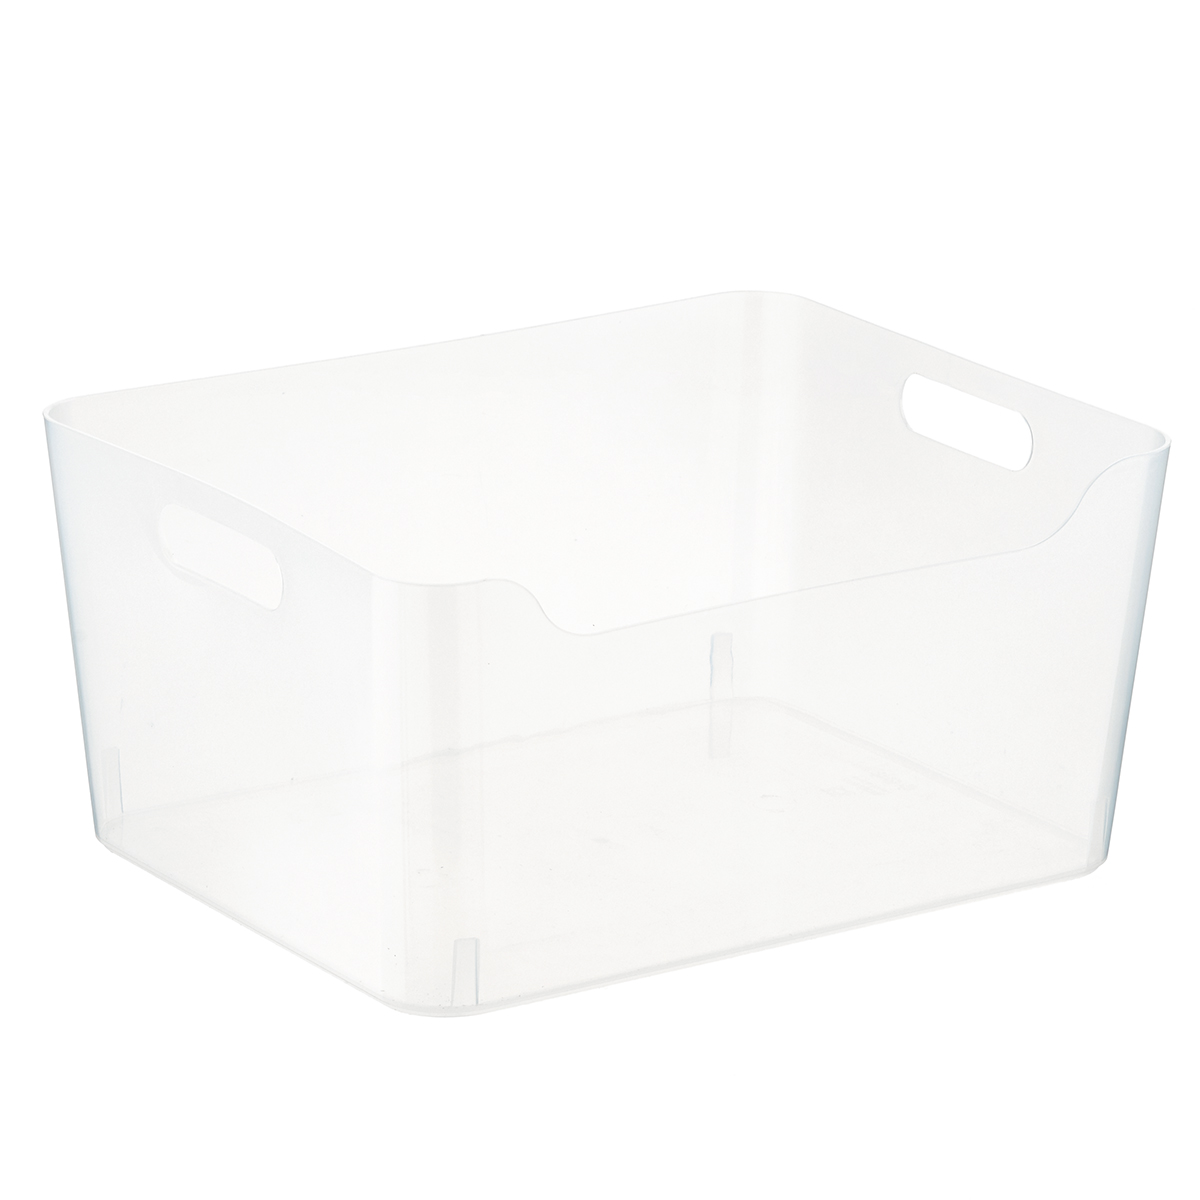 Medium Plastic Storage Bin w/Handles, White, 13.0625″ x 9.5″ x 5.5625″ –  Find Organizers That Fit